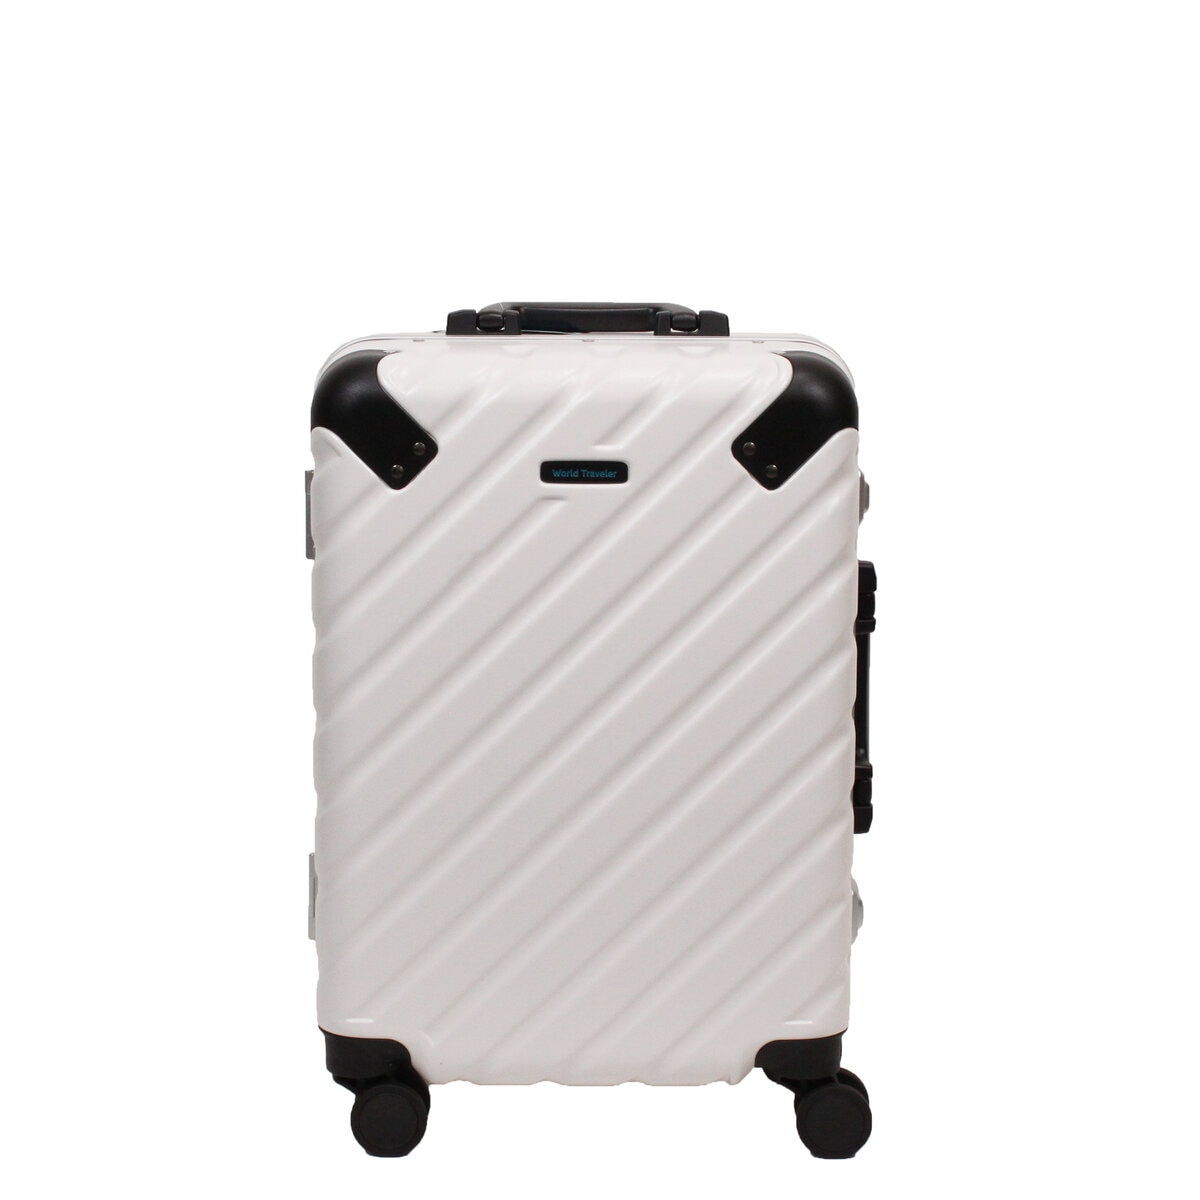 ACE ワールドトラベラー エラコール スーツケース 機内持ち込みサイズ  32L  0409600